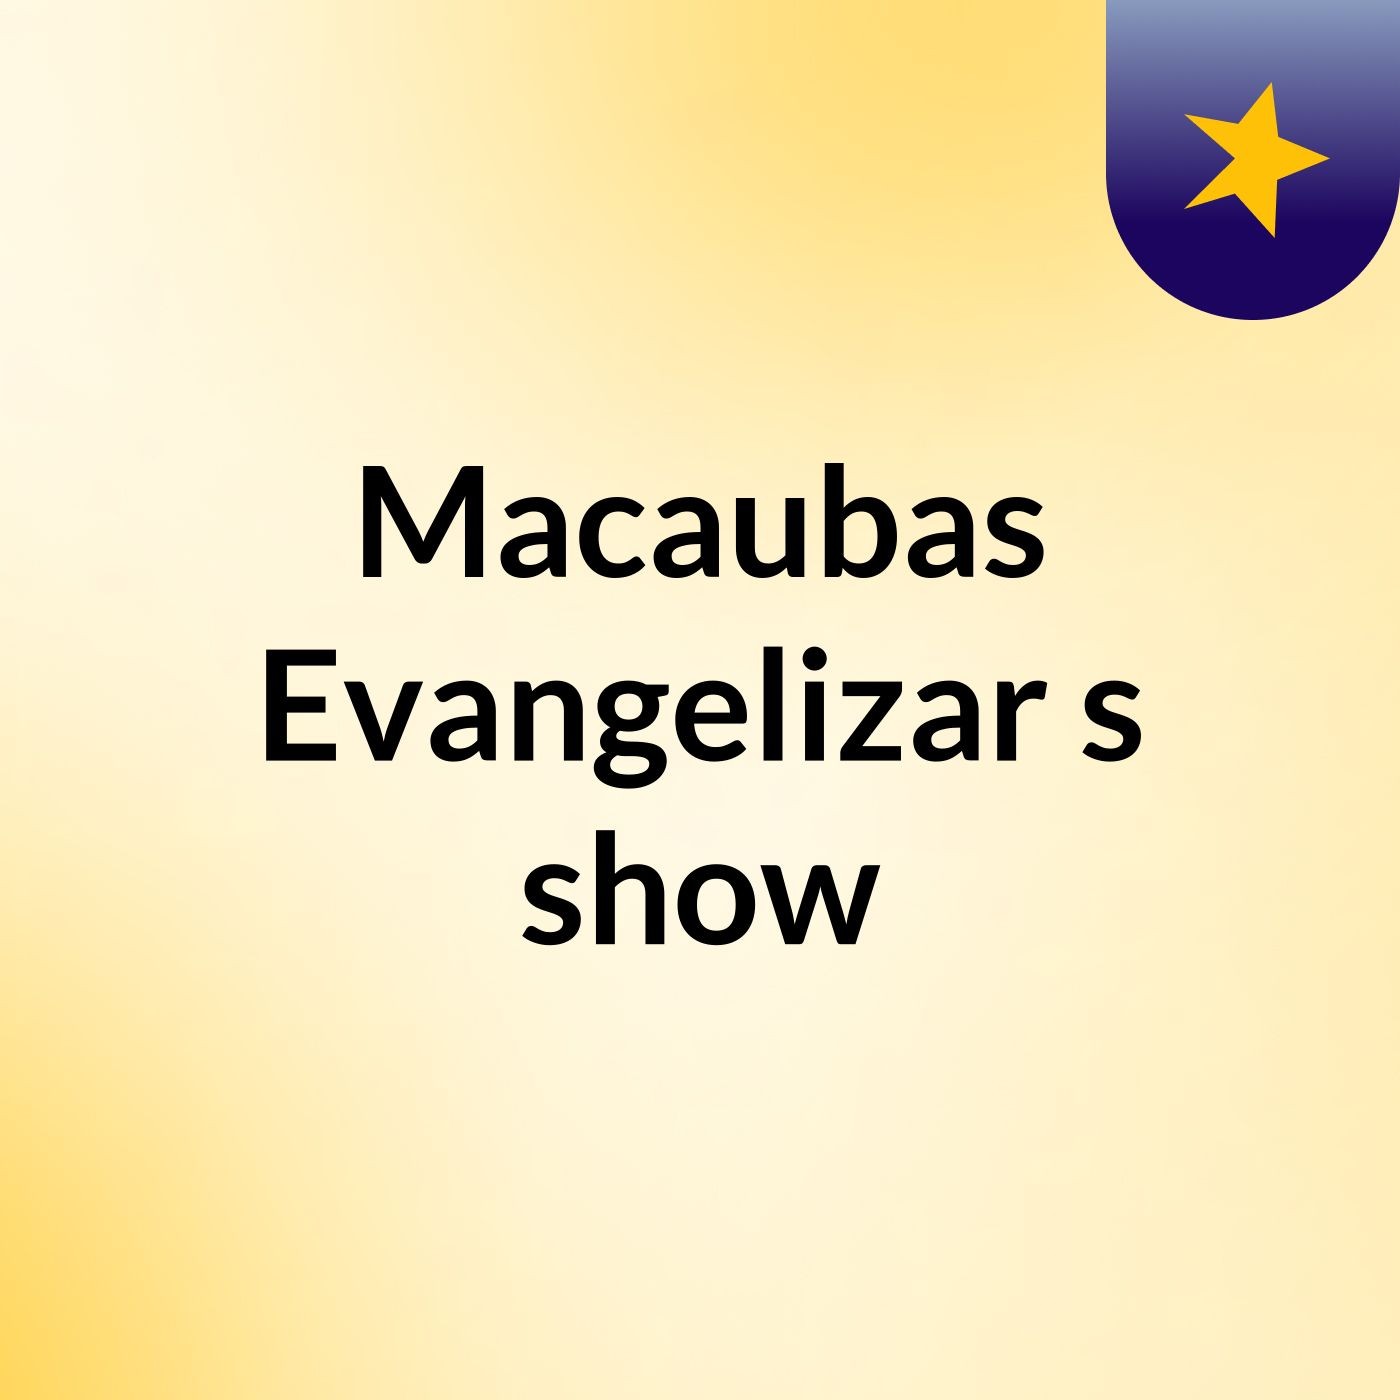 Macaubas Evangelizar's show